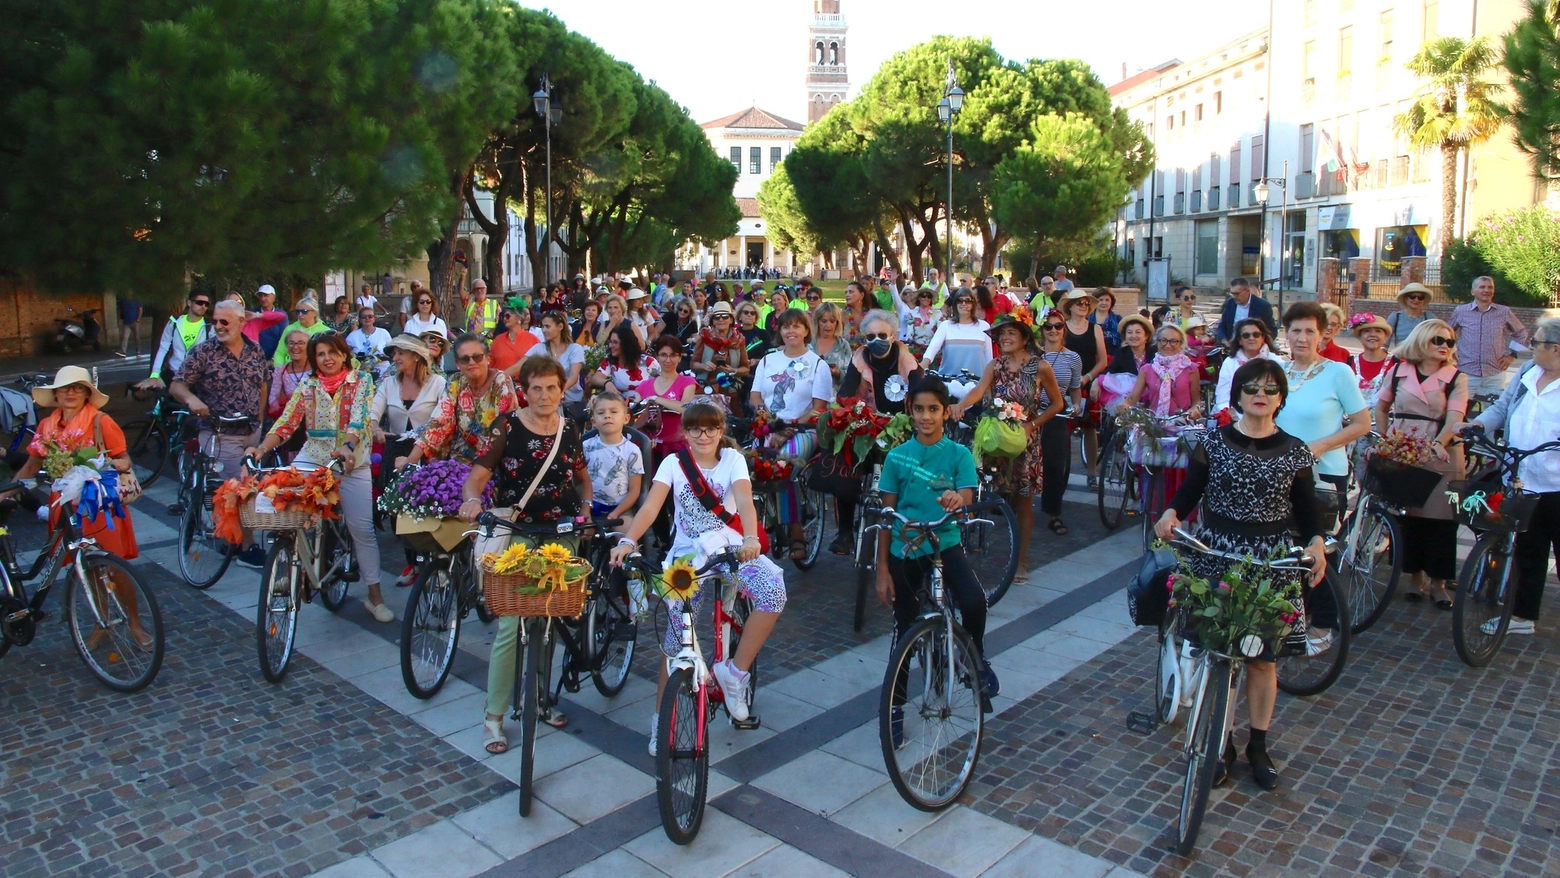 Domenica pomeriggio parte da piazza Vittorio Emanuele II il colorato corteo di ciclisti organizzato dalle signore rodigine